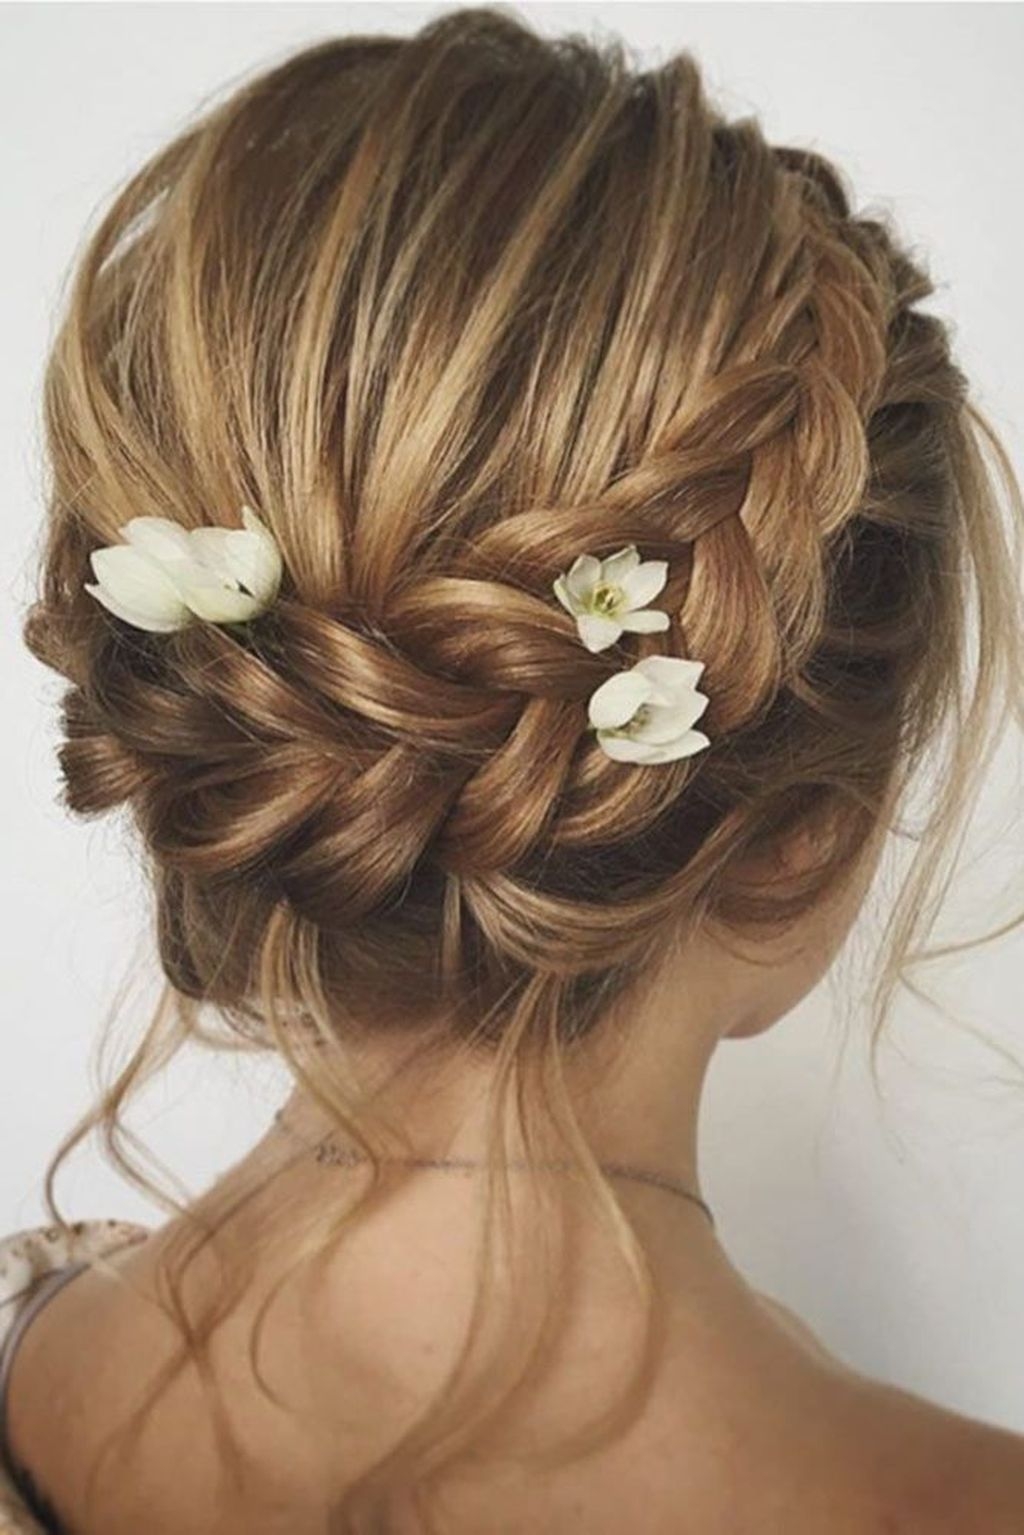 39 Rustic Hairstyle Ideas For Wedding - ADDICFASHION